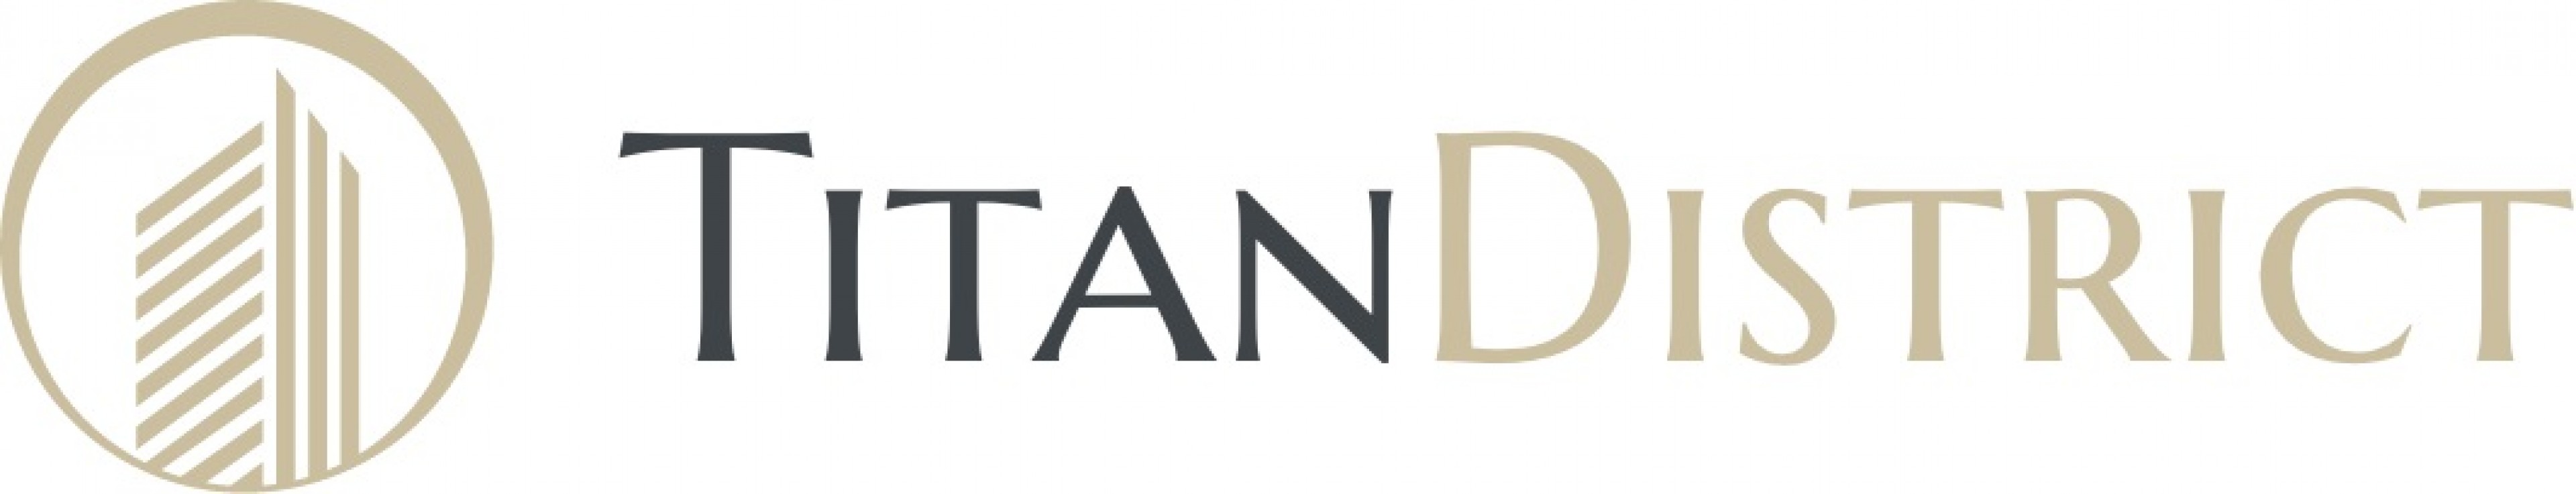 Logo Titan District Faza 2